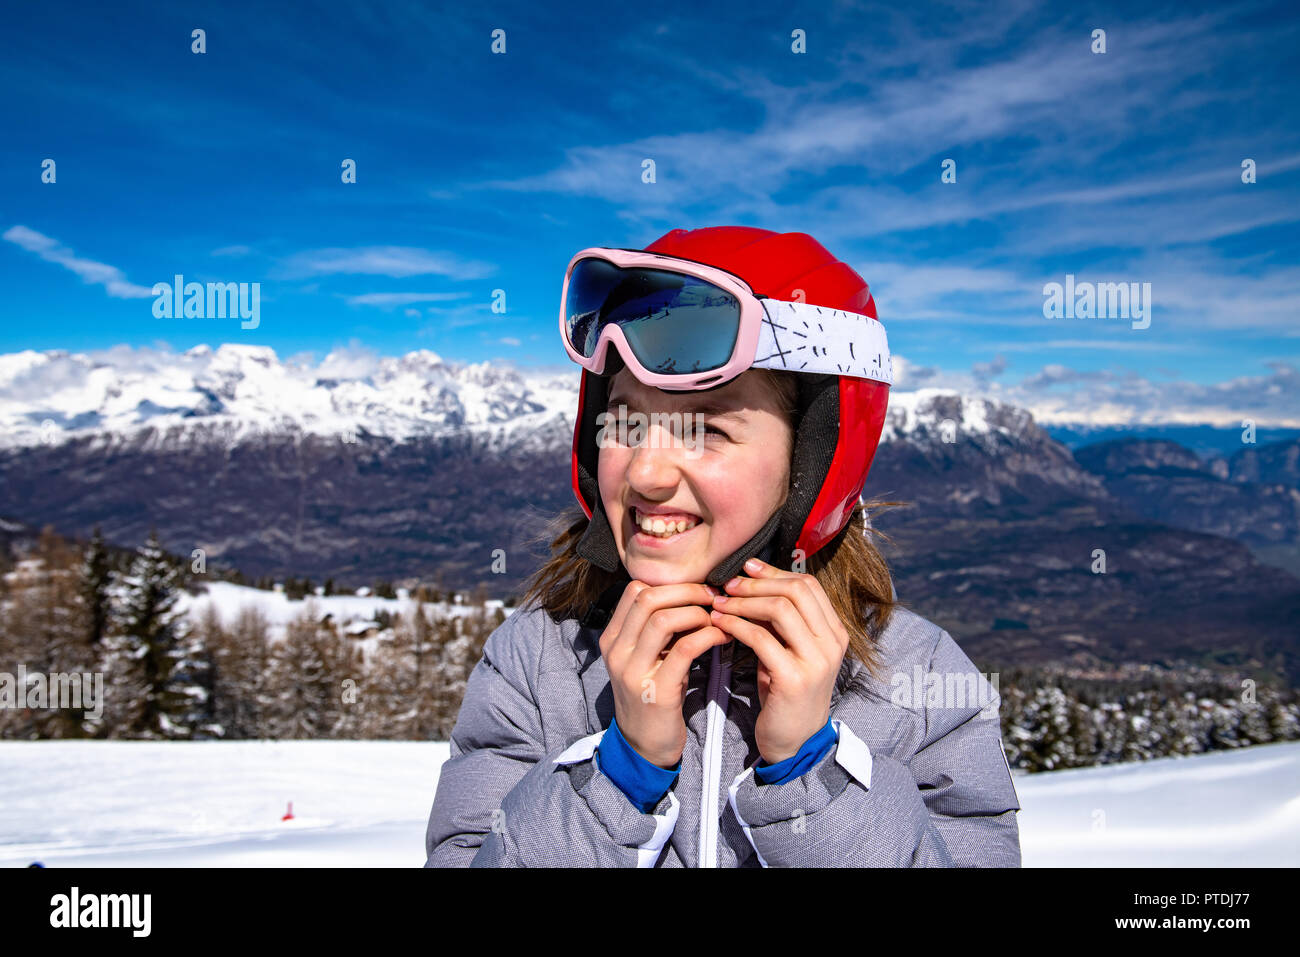 Niña en las pistas de esquí con cascos y gafas de esquí Fotografía